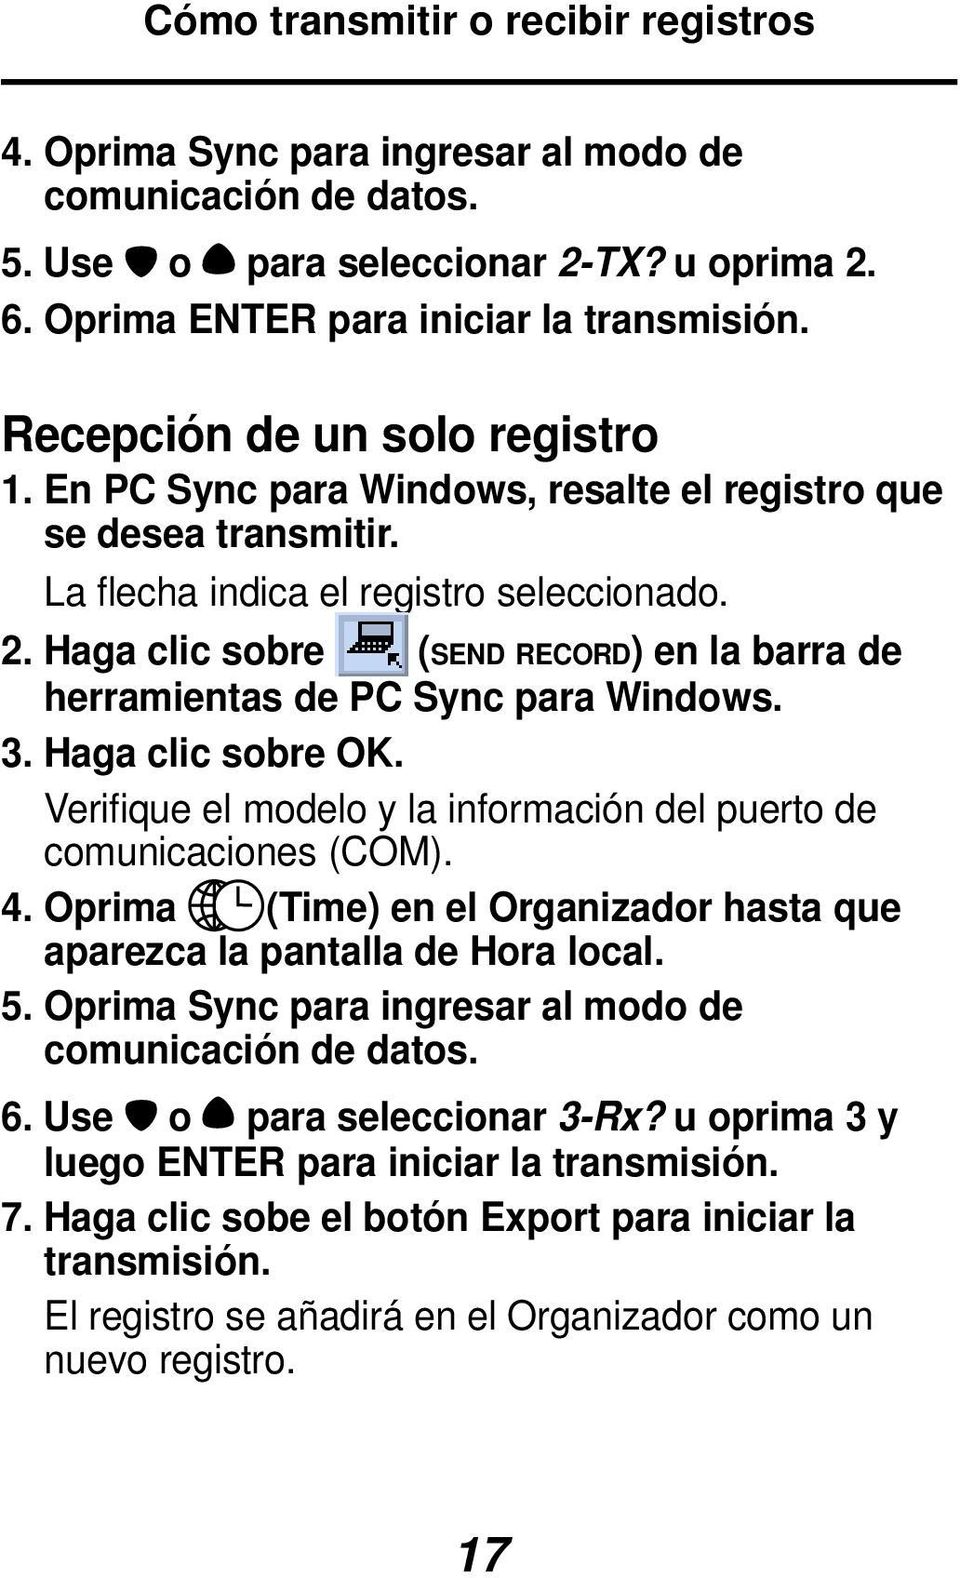 Haga clic sobre (SEND RECORD) en la barra de herramientas de PC Sync para Windows. 3. Haga clic sobre OK. Verifique el modelo y la información del puerto de comunicaciones (COM). 4.